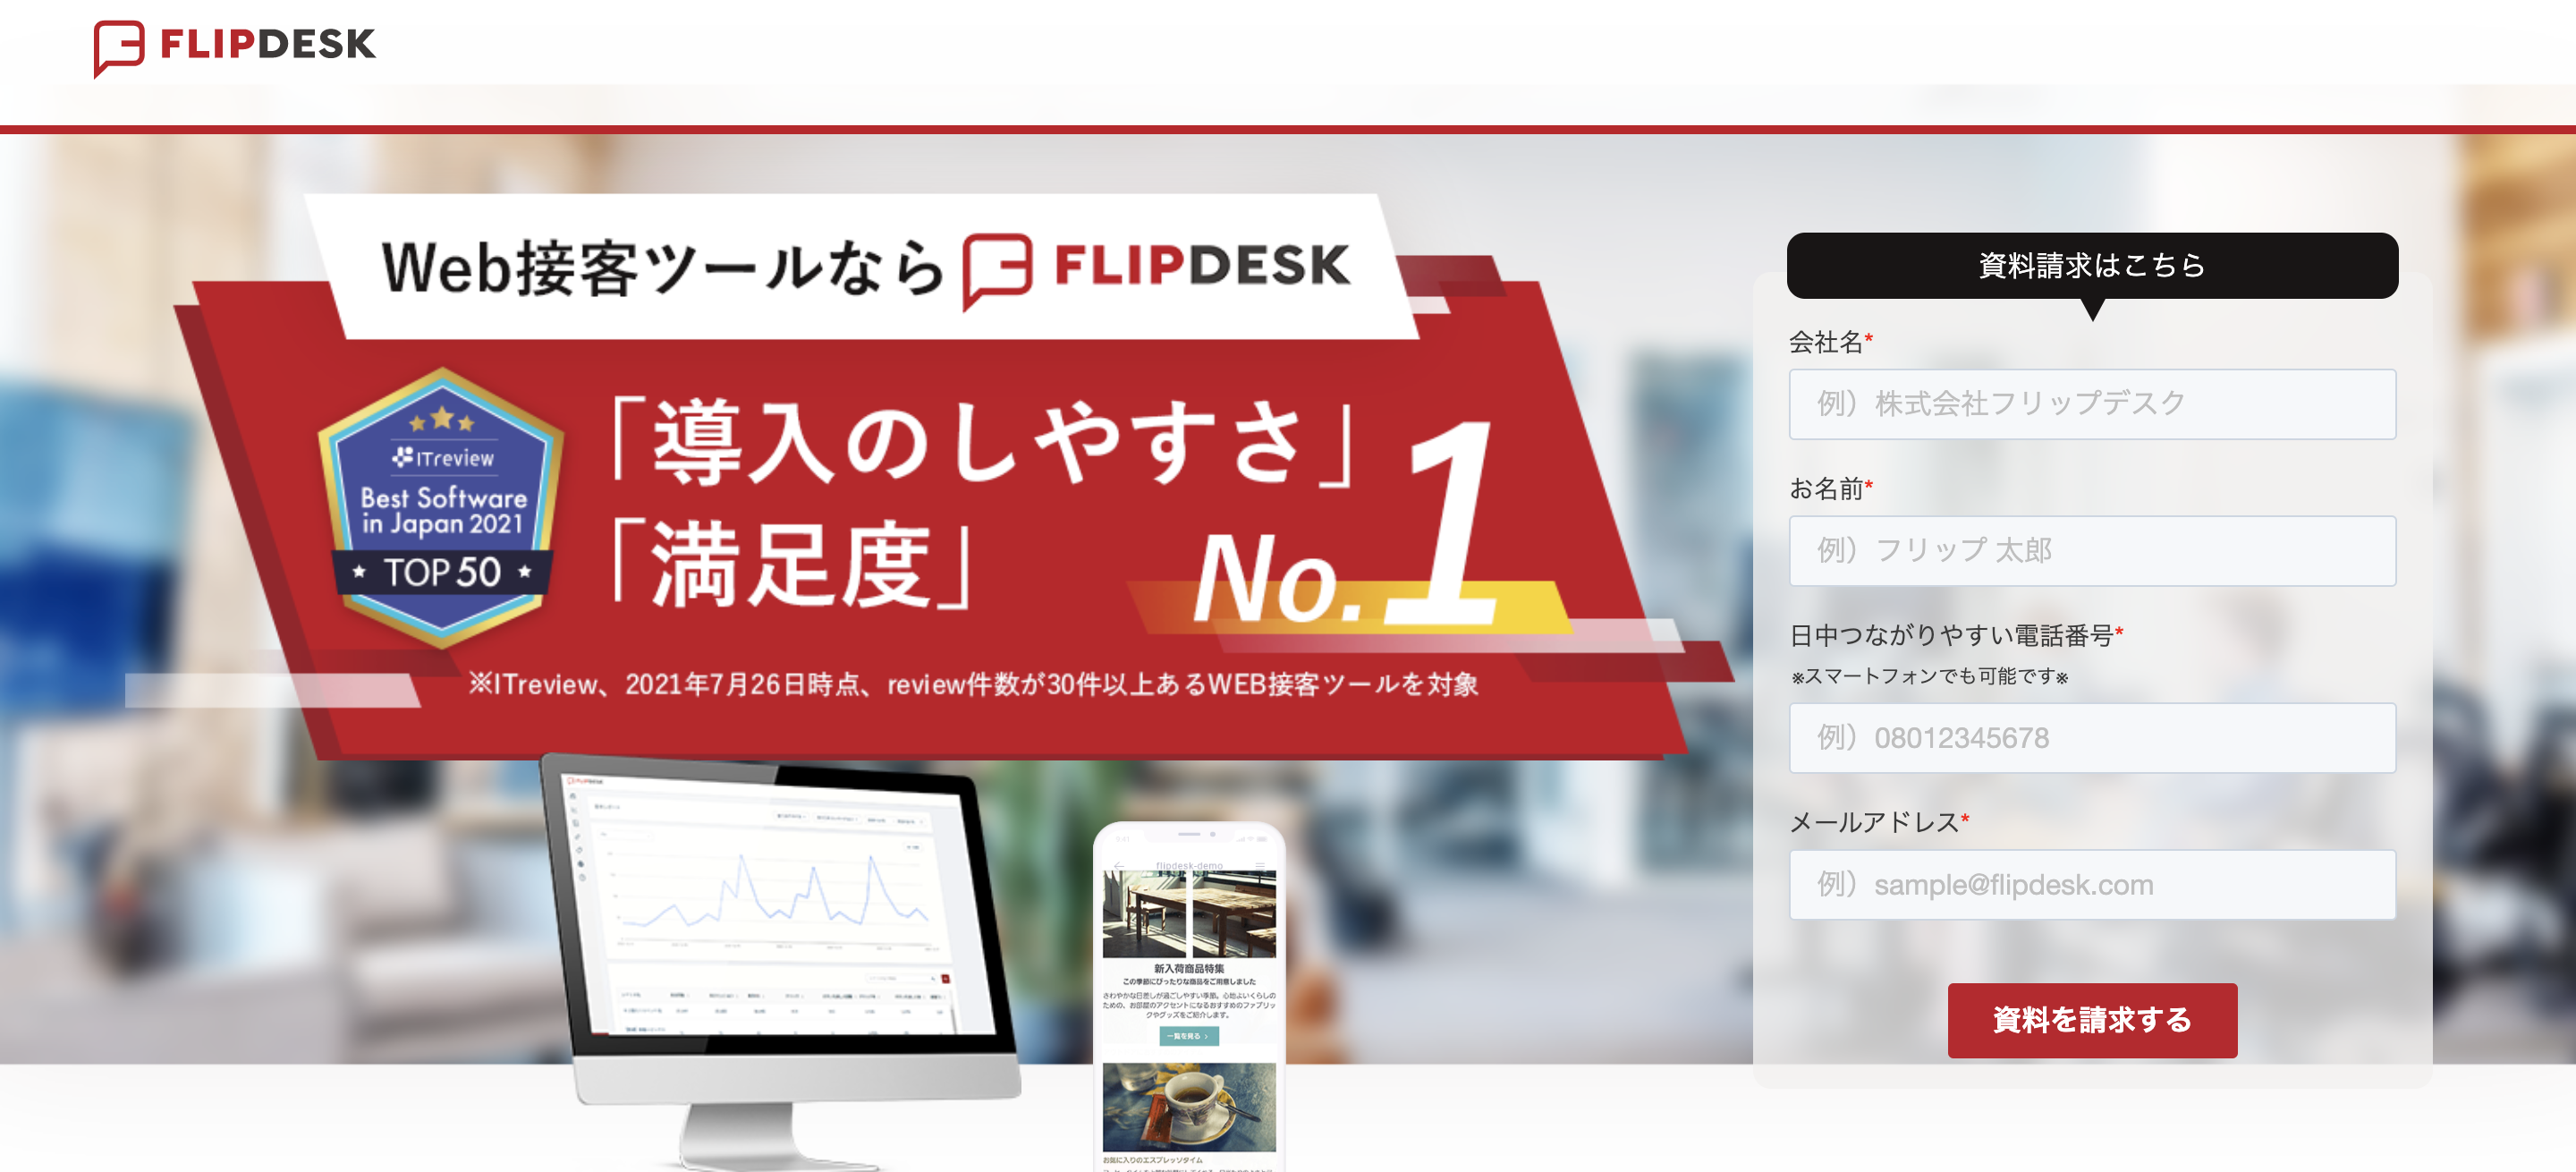 Flip desk